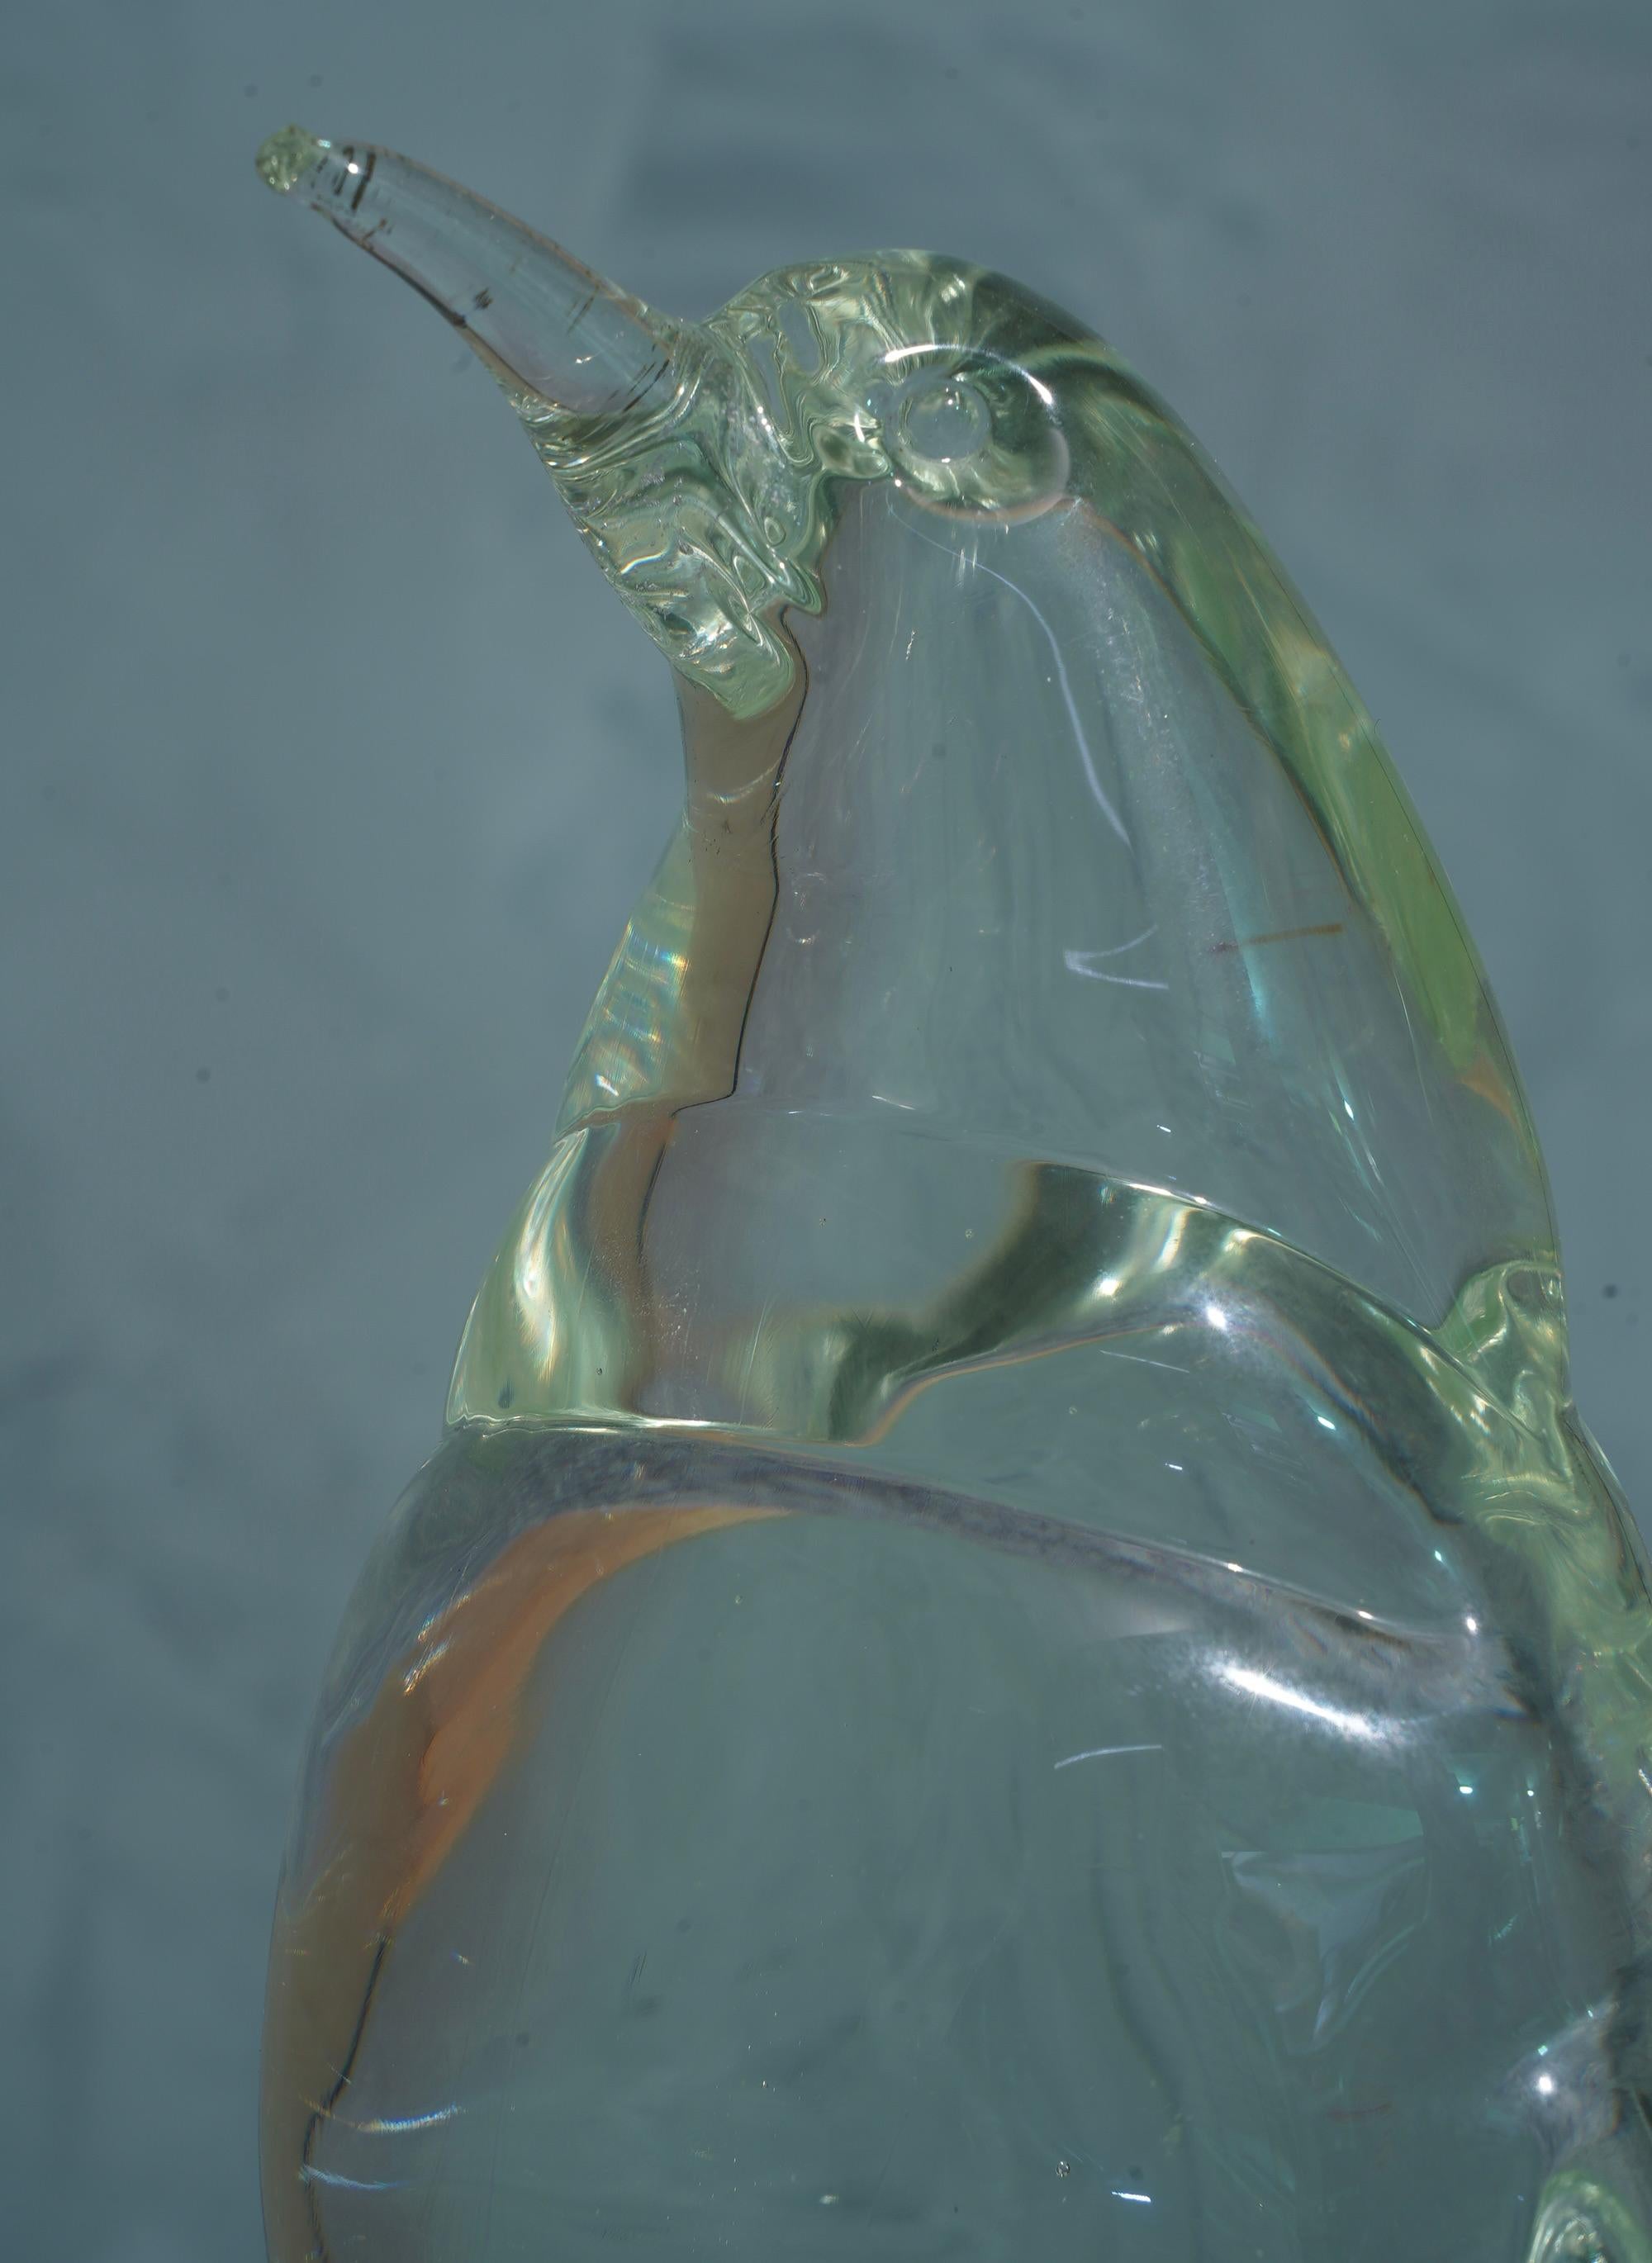 Schöne Murano-Glasskulptur, die einen Pinguin mit nach oben gerichtetem Kopf darstellt.

Die Murano-Glasskulptur hat die gleiche Verarbeitungsweise wie ein 